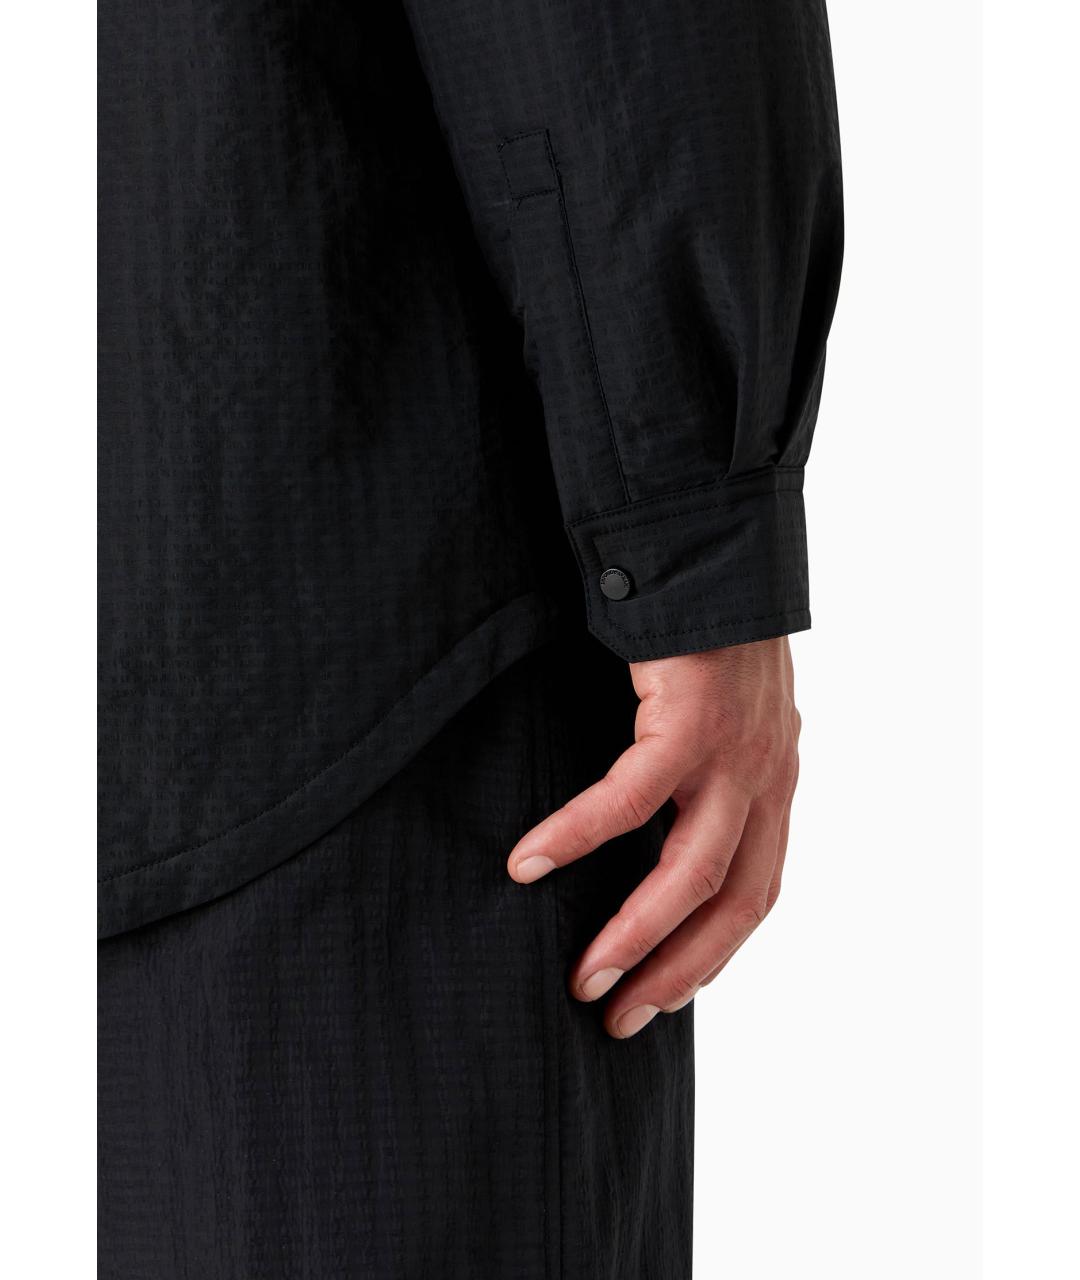 EMPORIO ARMANI Черная полиамидовая куртка, фото 4